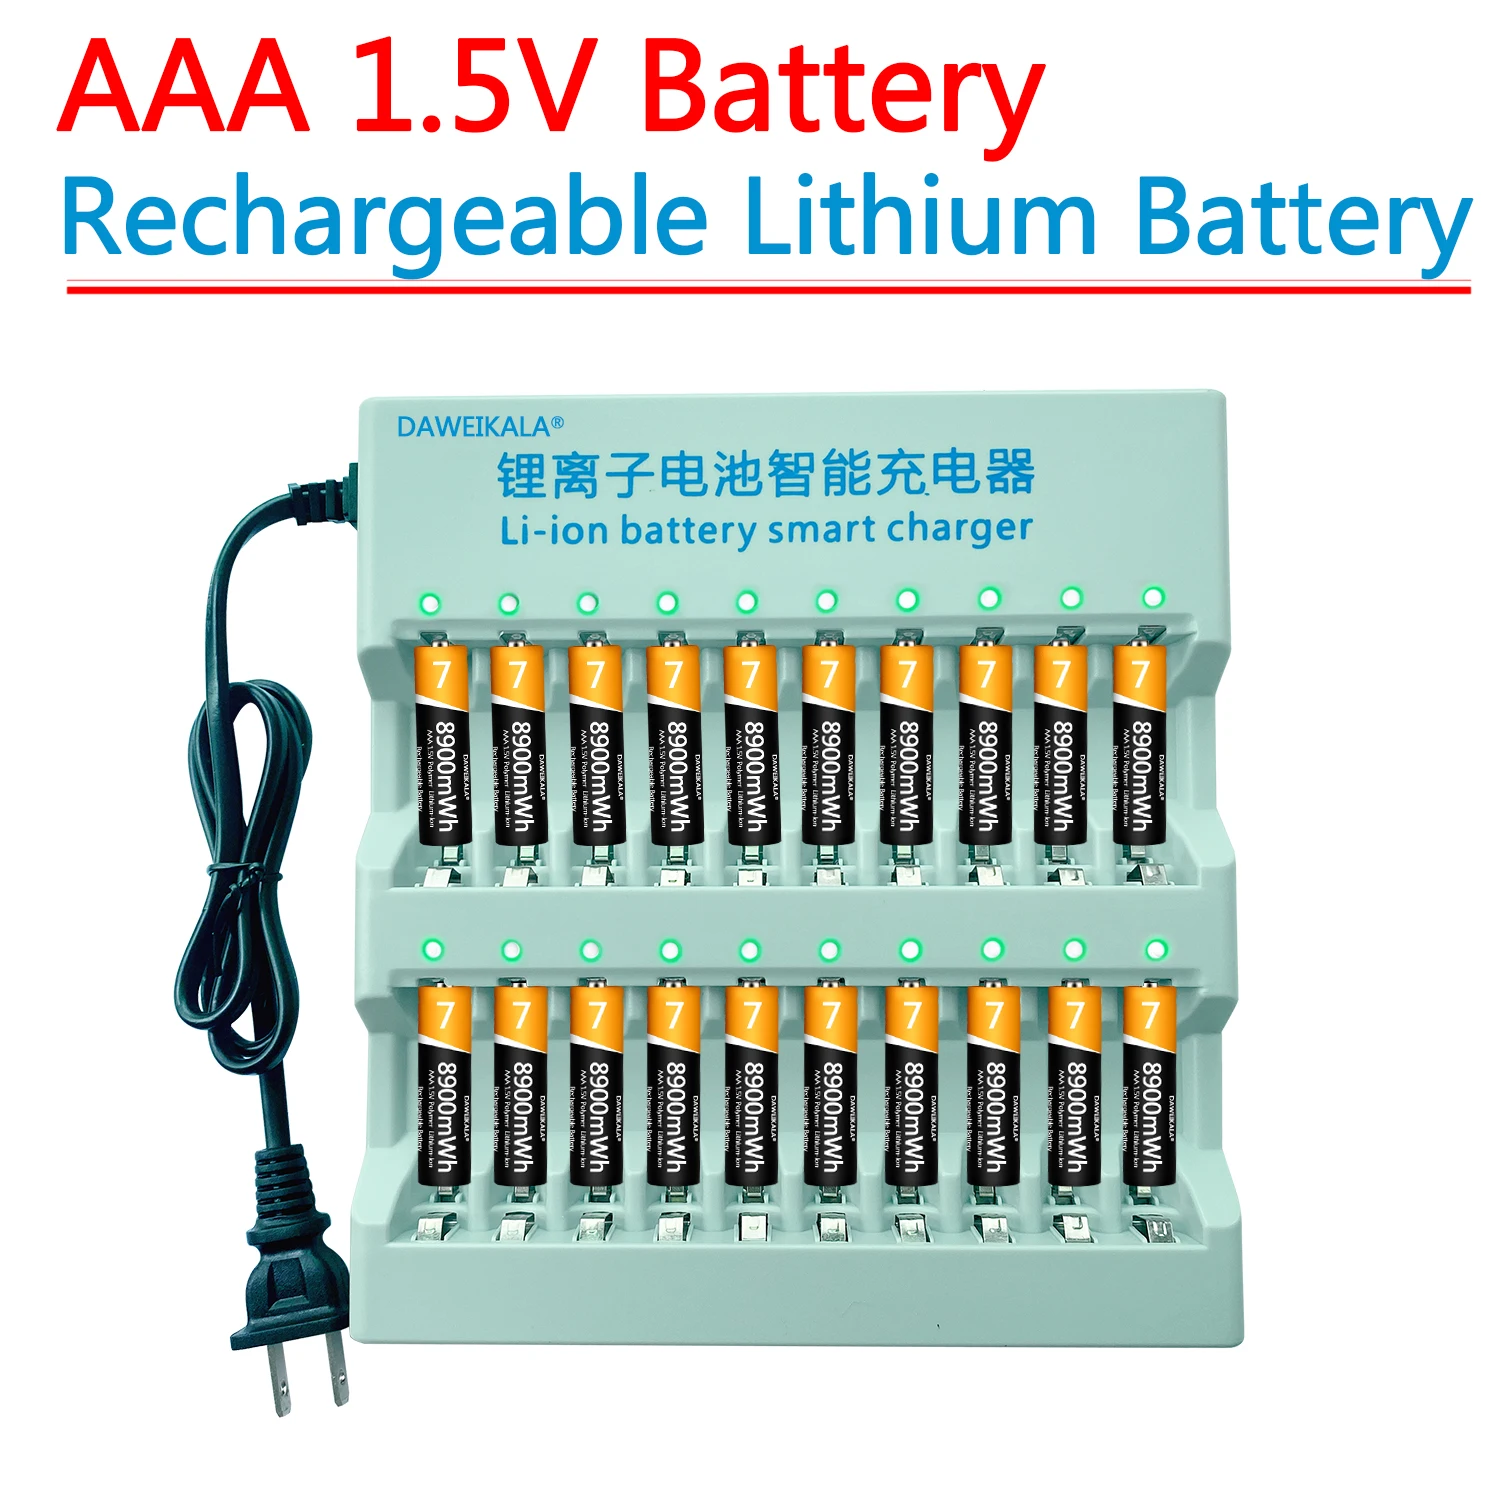 

Аккумуляторная батарея AAA 1,5 в AAA, литий-ионная батарея МВт/ч AAA, литий-ионная батарея для пульта дистанционного управления, мыши, маленького вентилятора, электрической игрушки